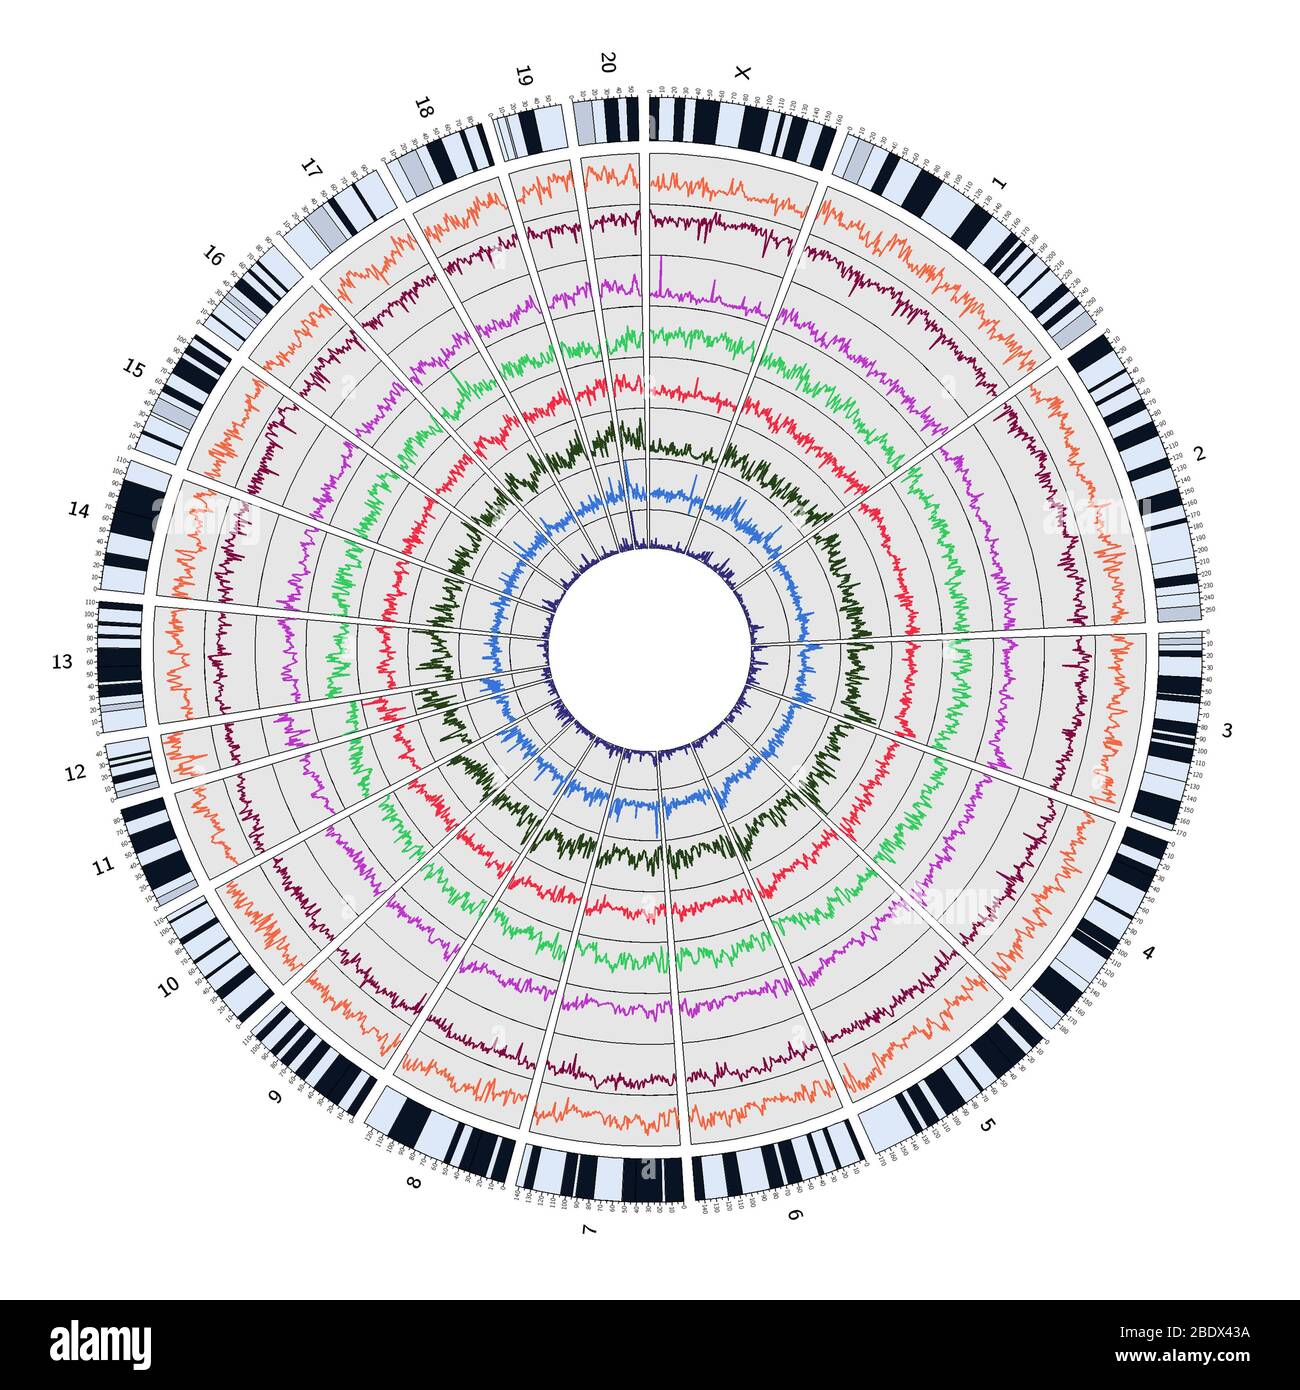 Circos, Circular Genome Map, Rat Stock Photo